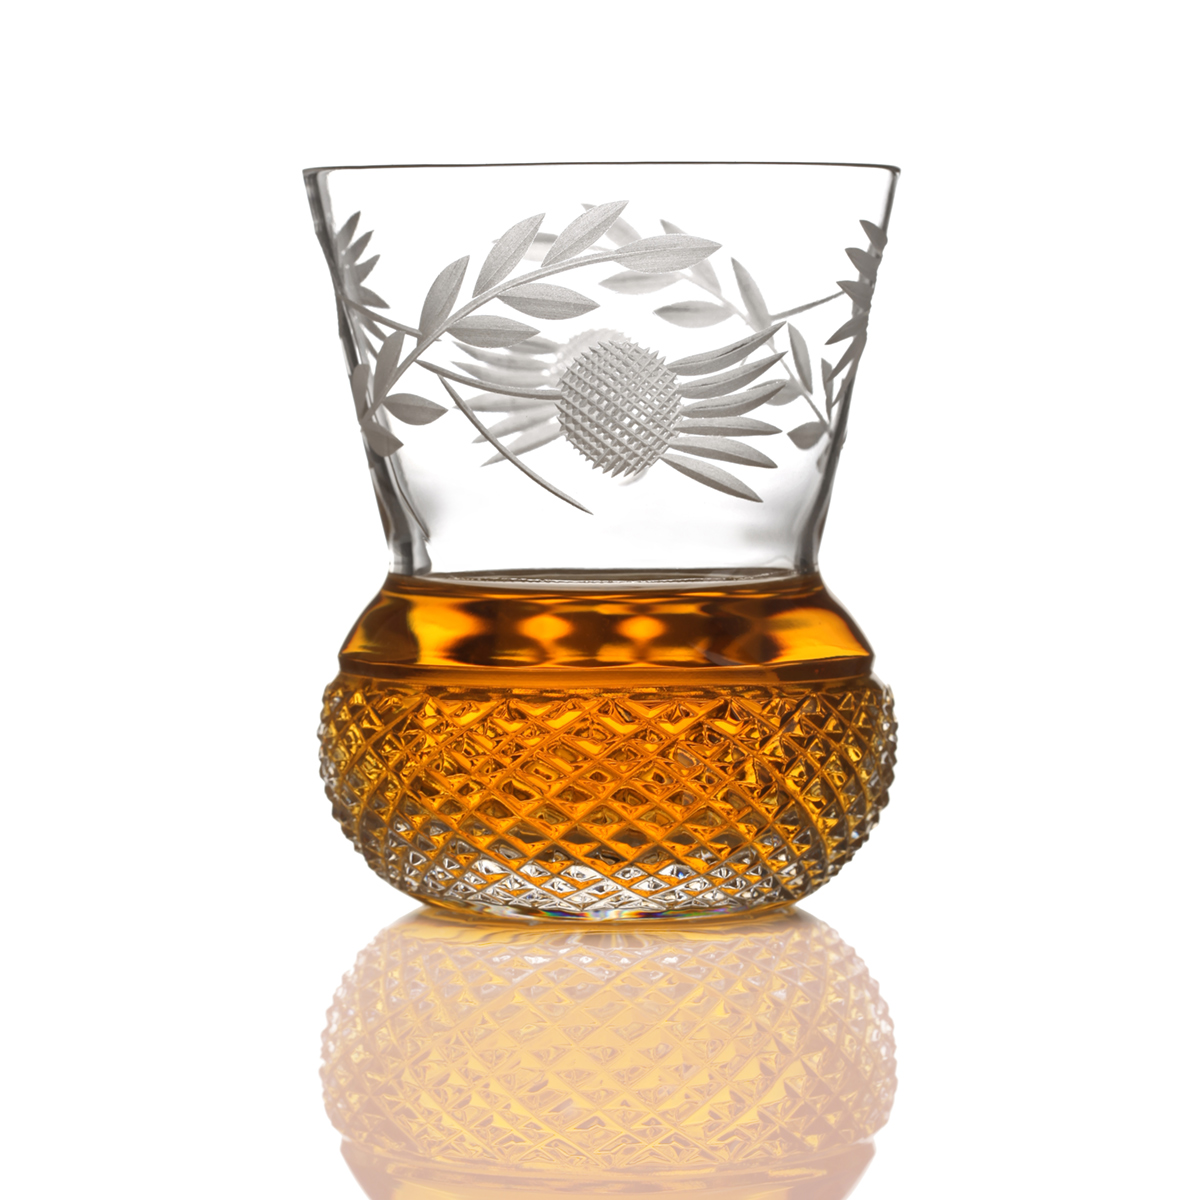 Flower of Scotland - schottische Distel - handgefertigtes Kristall Whisky Glas